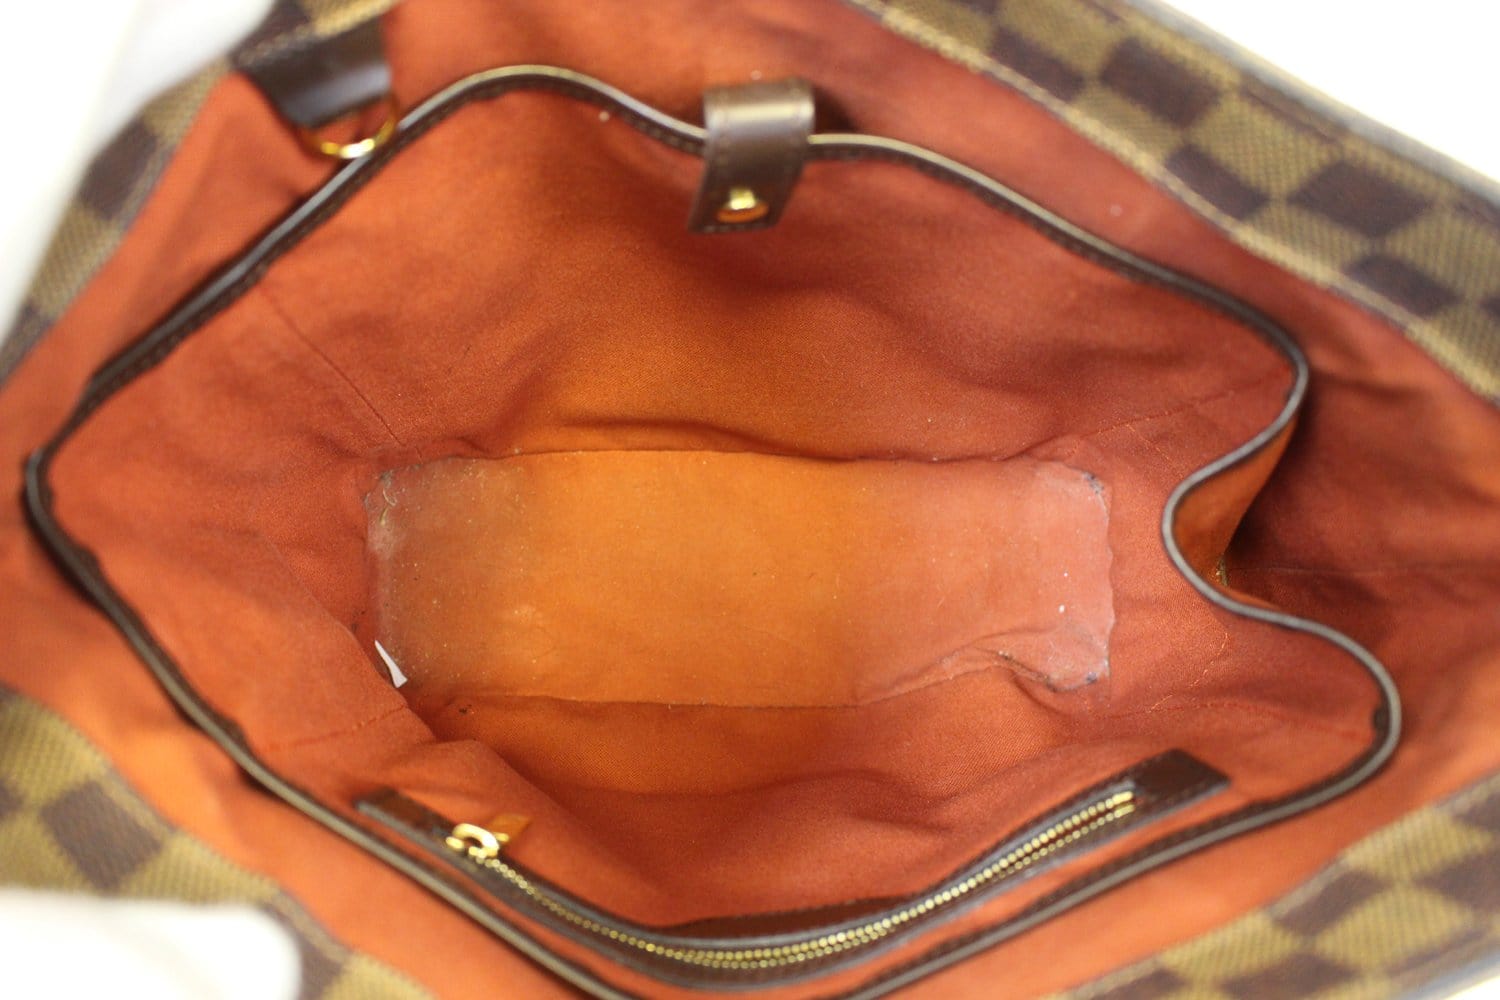 LOUIS VUITTON LV Cabas Mezzo Shoulder Bag Monogram Leather Brown M51151  82MS470